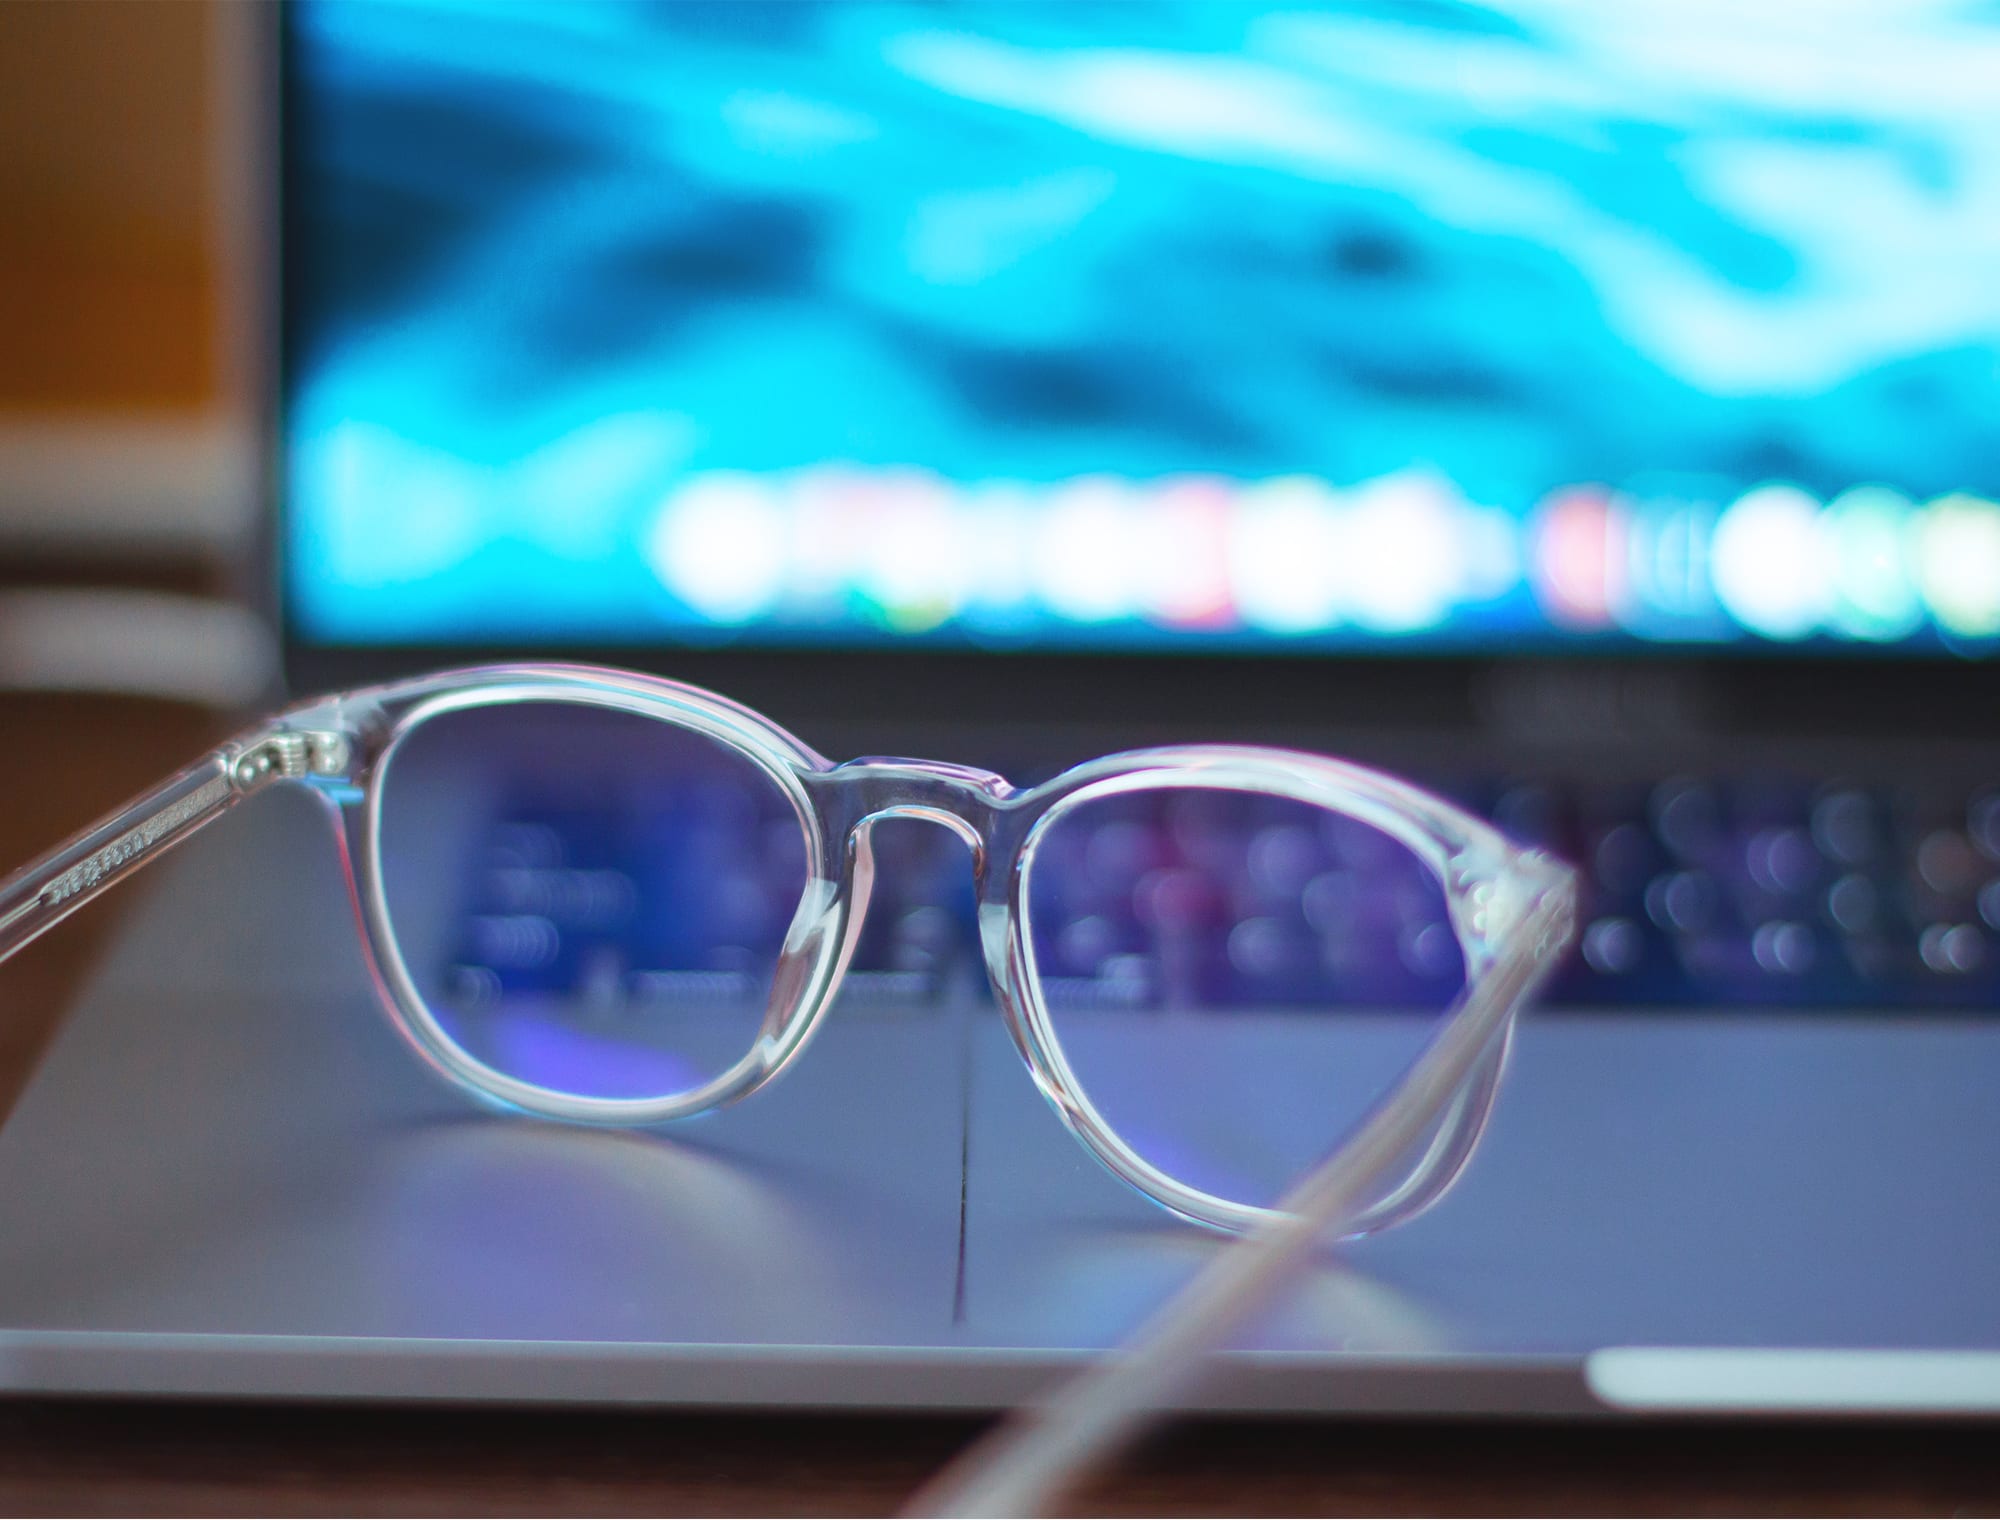 Glasögon med transparenta bågar ligger på en laptop med blått ljus